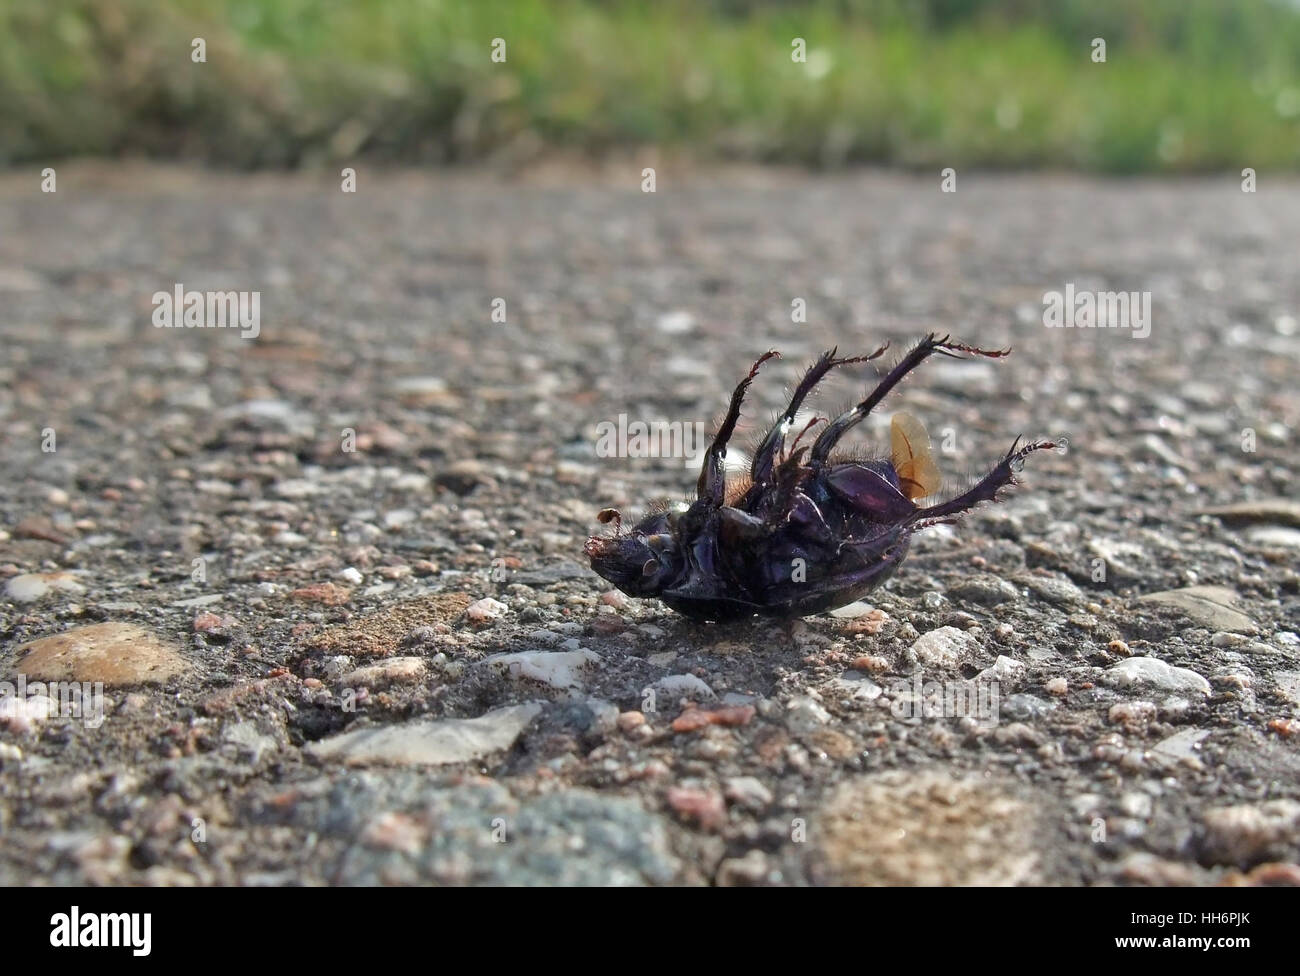 Libre montrant un bug nommé 'Cysolina' sturmi en décubitus dorsal sur trottoir en ambiance ensoleillée Banque D'Images